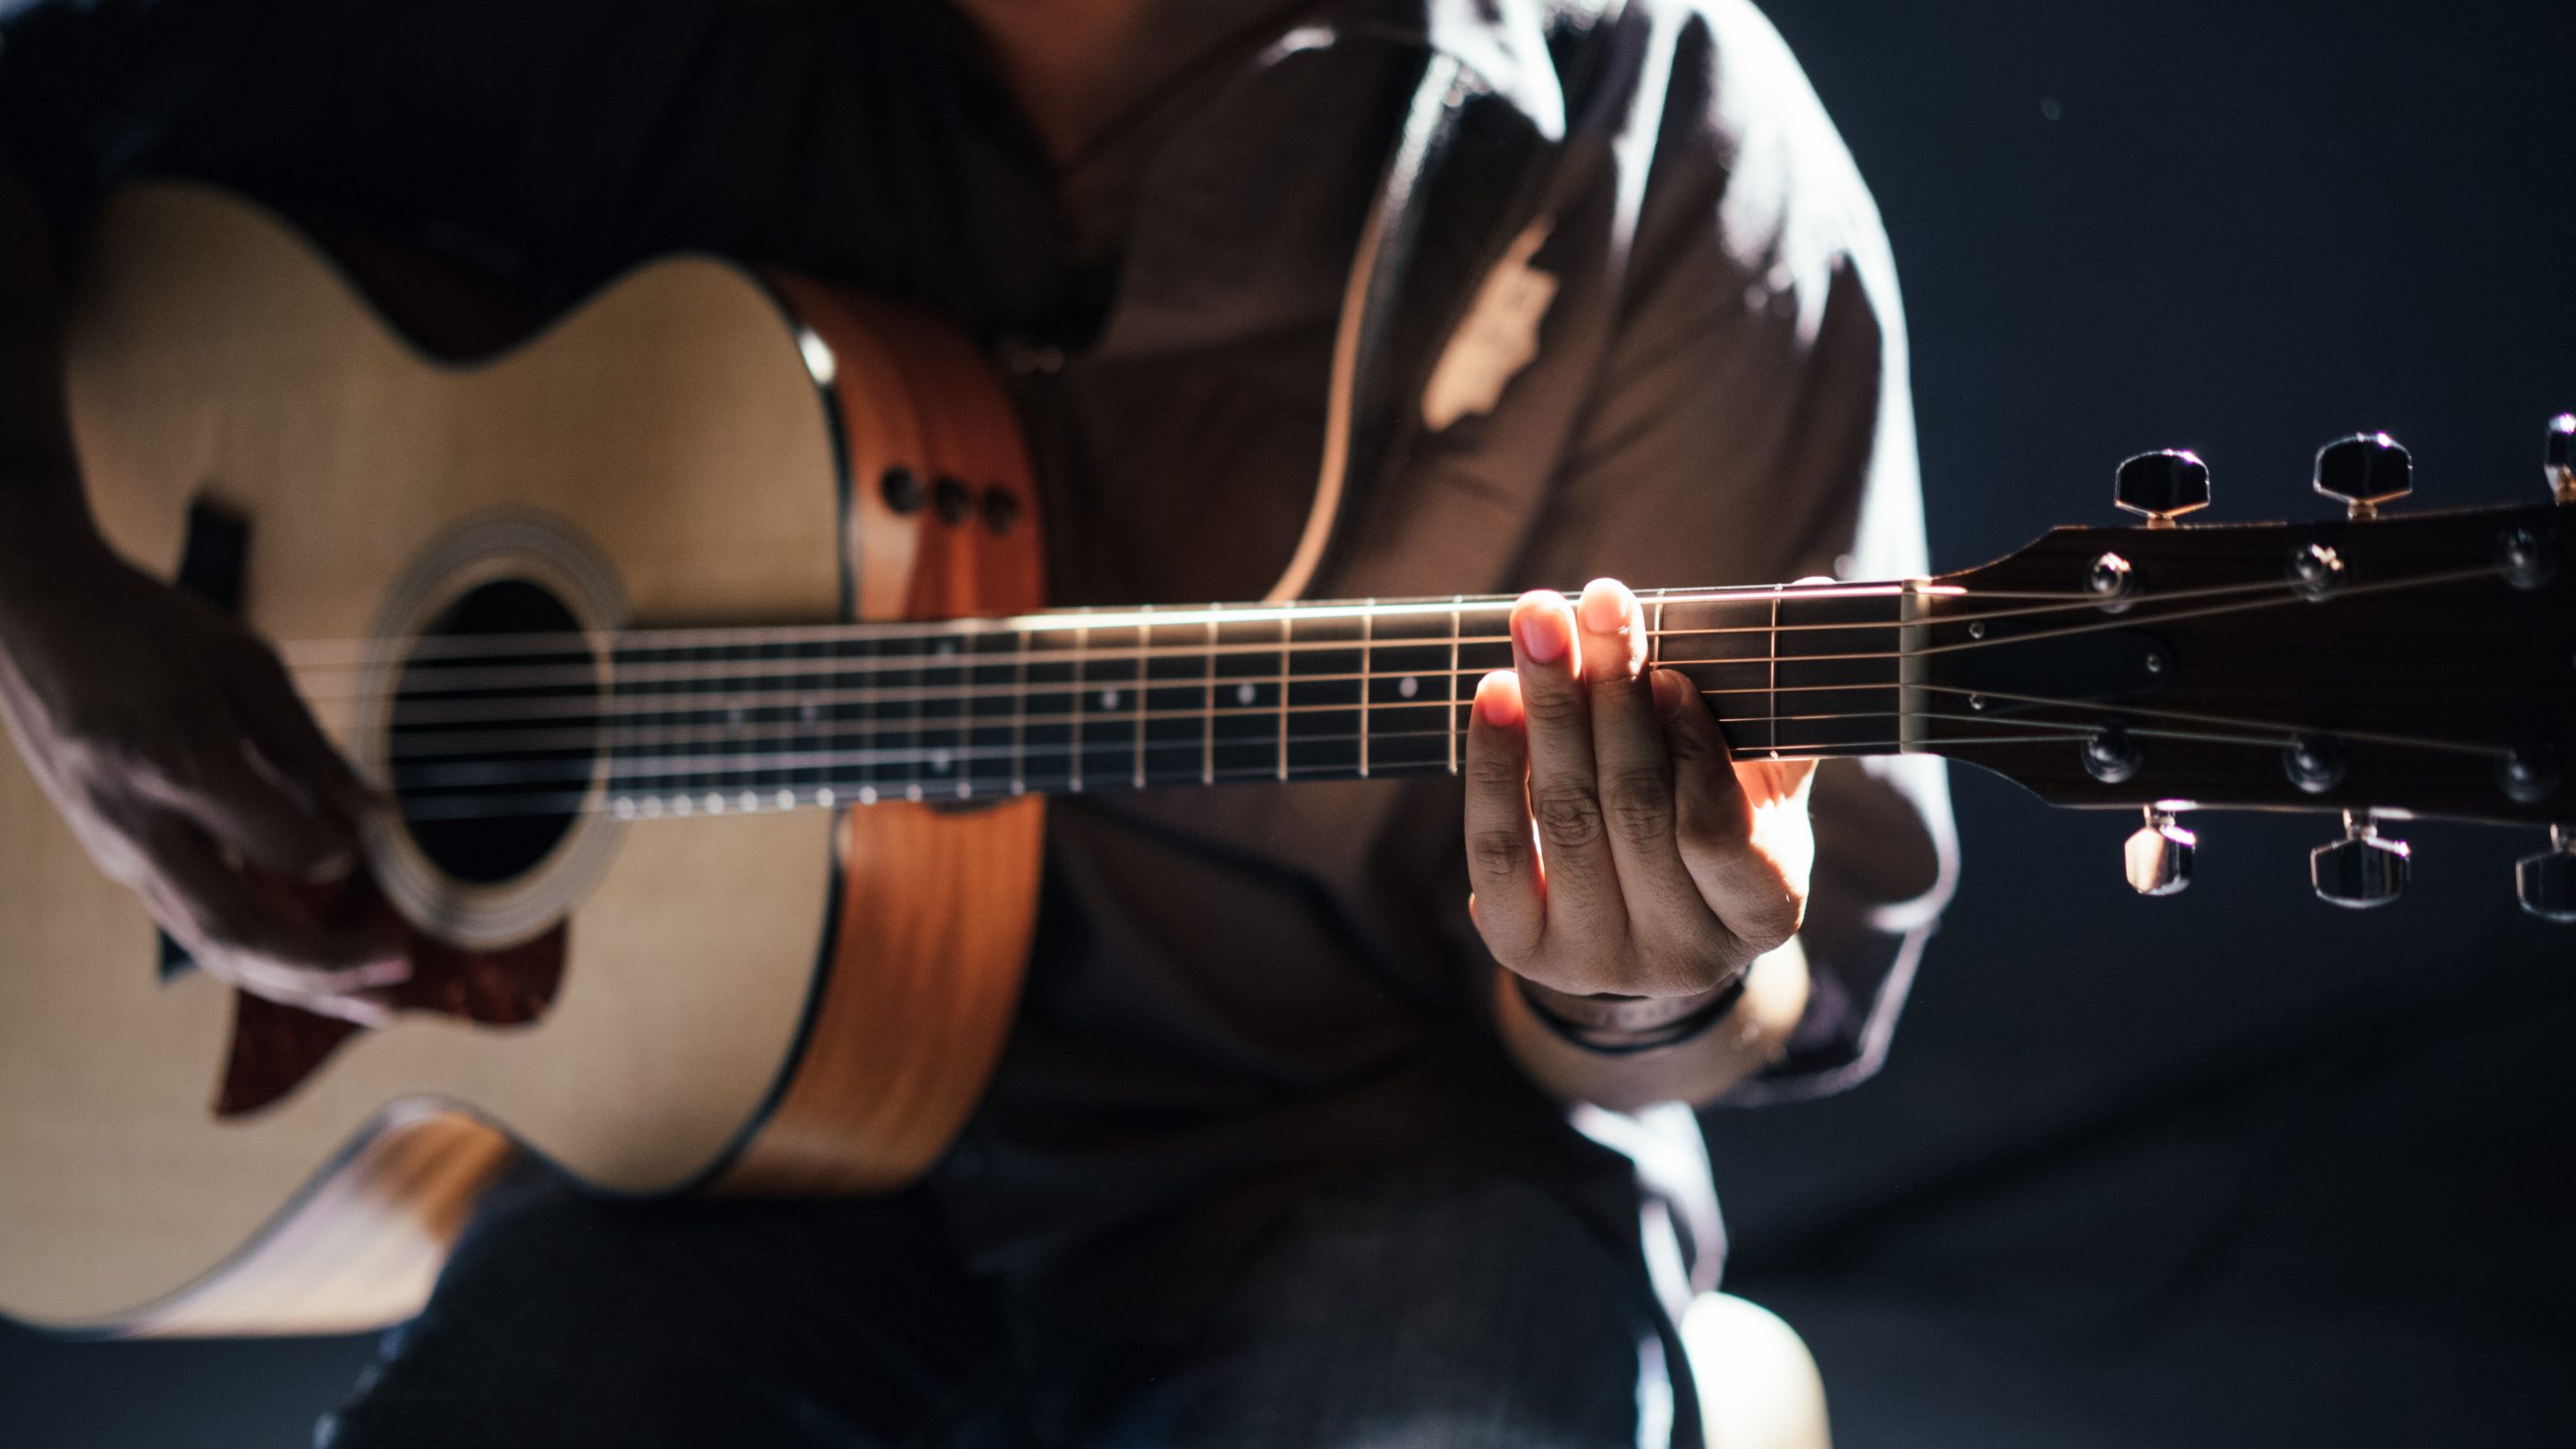 En mand, der klimprer på en akustisk guitar og viser sit musikalske talent og kreativitet som en af musikkens skabere.